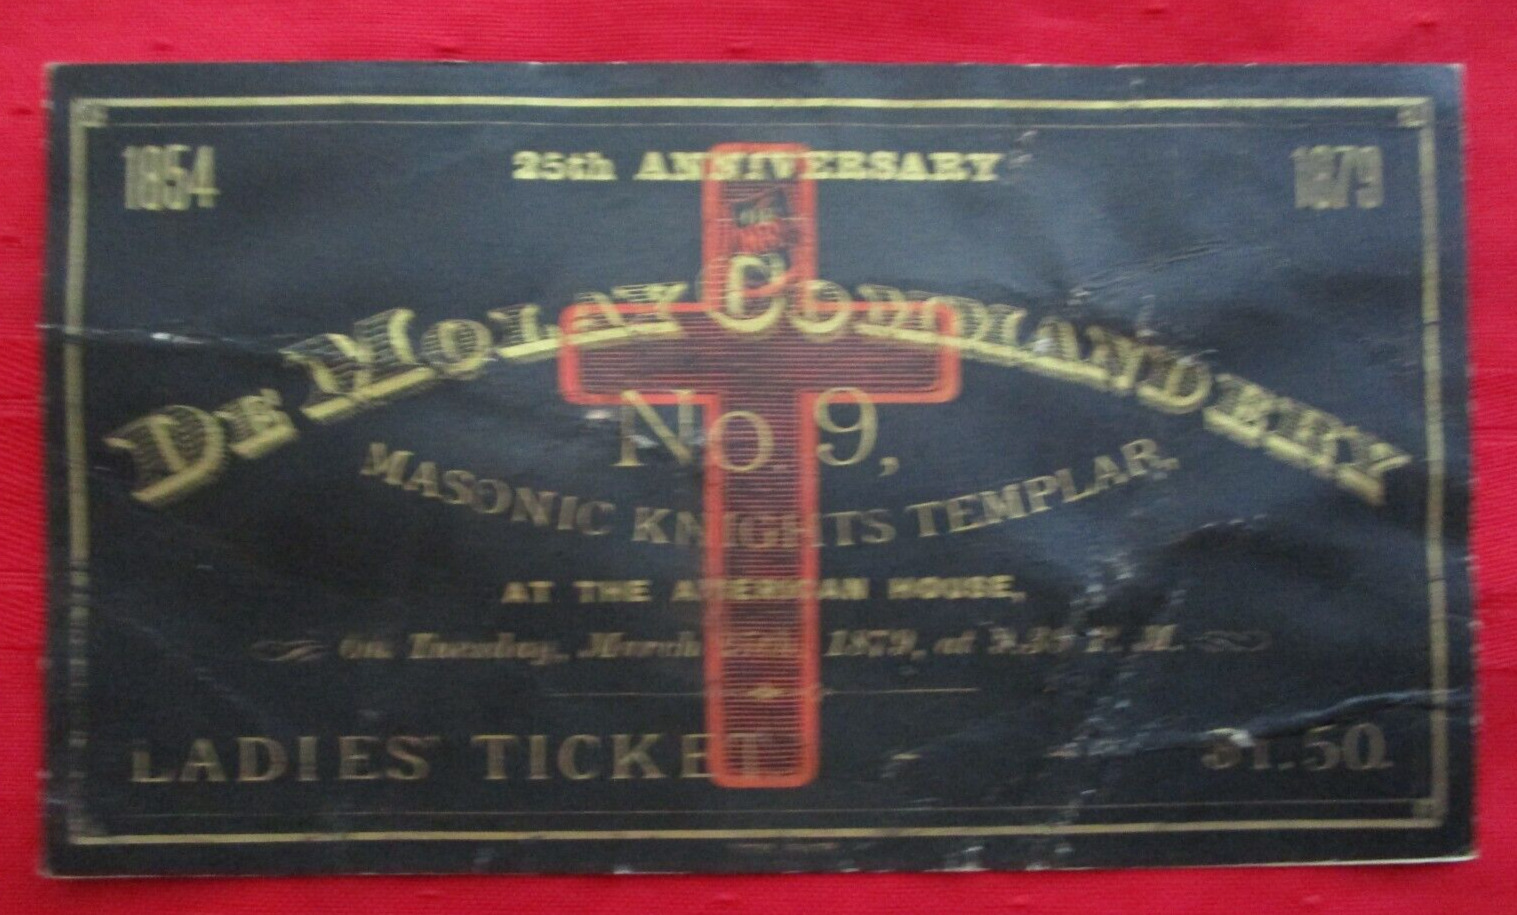 KNIGHTS TEMPLAR - De Molay Commandery - Ladies Ticket - 25th Anniversary - 1879